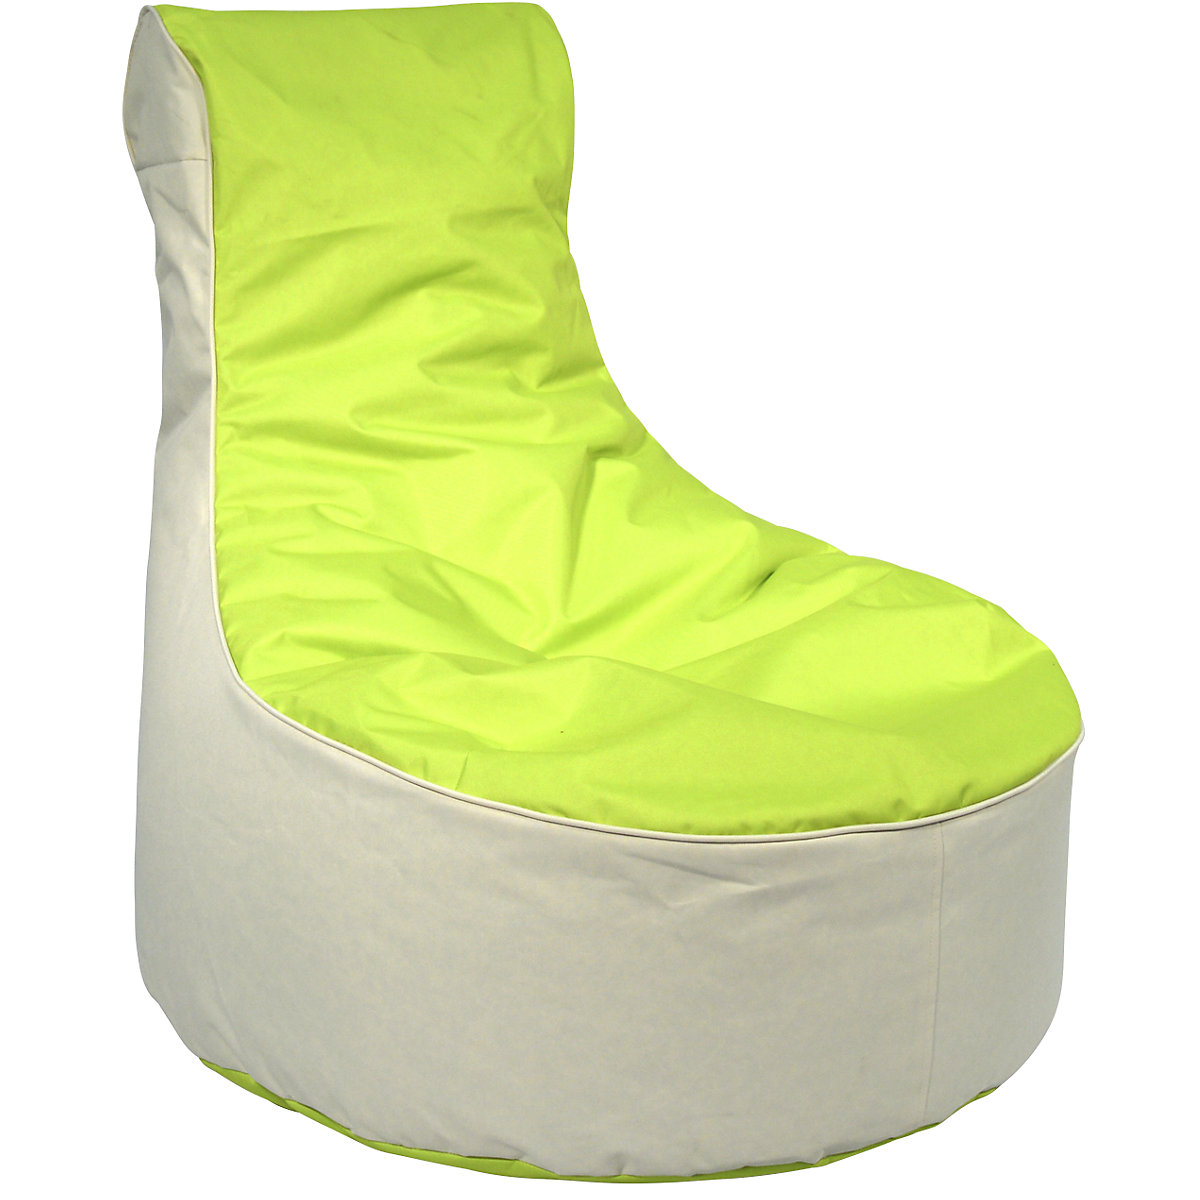 Vreča za sedenje, VxŠxG 900 x 800 x 800 mm, beige / jabolčno zelene barve-7